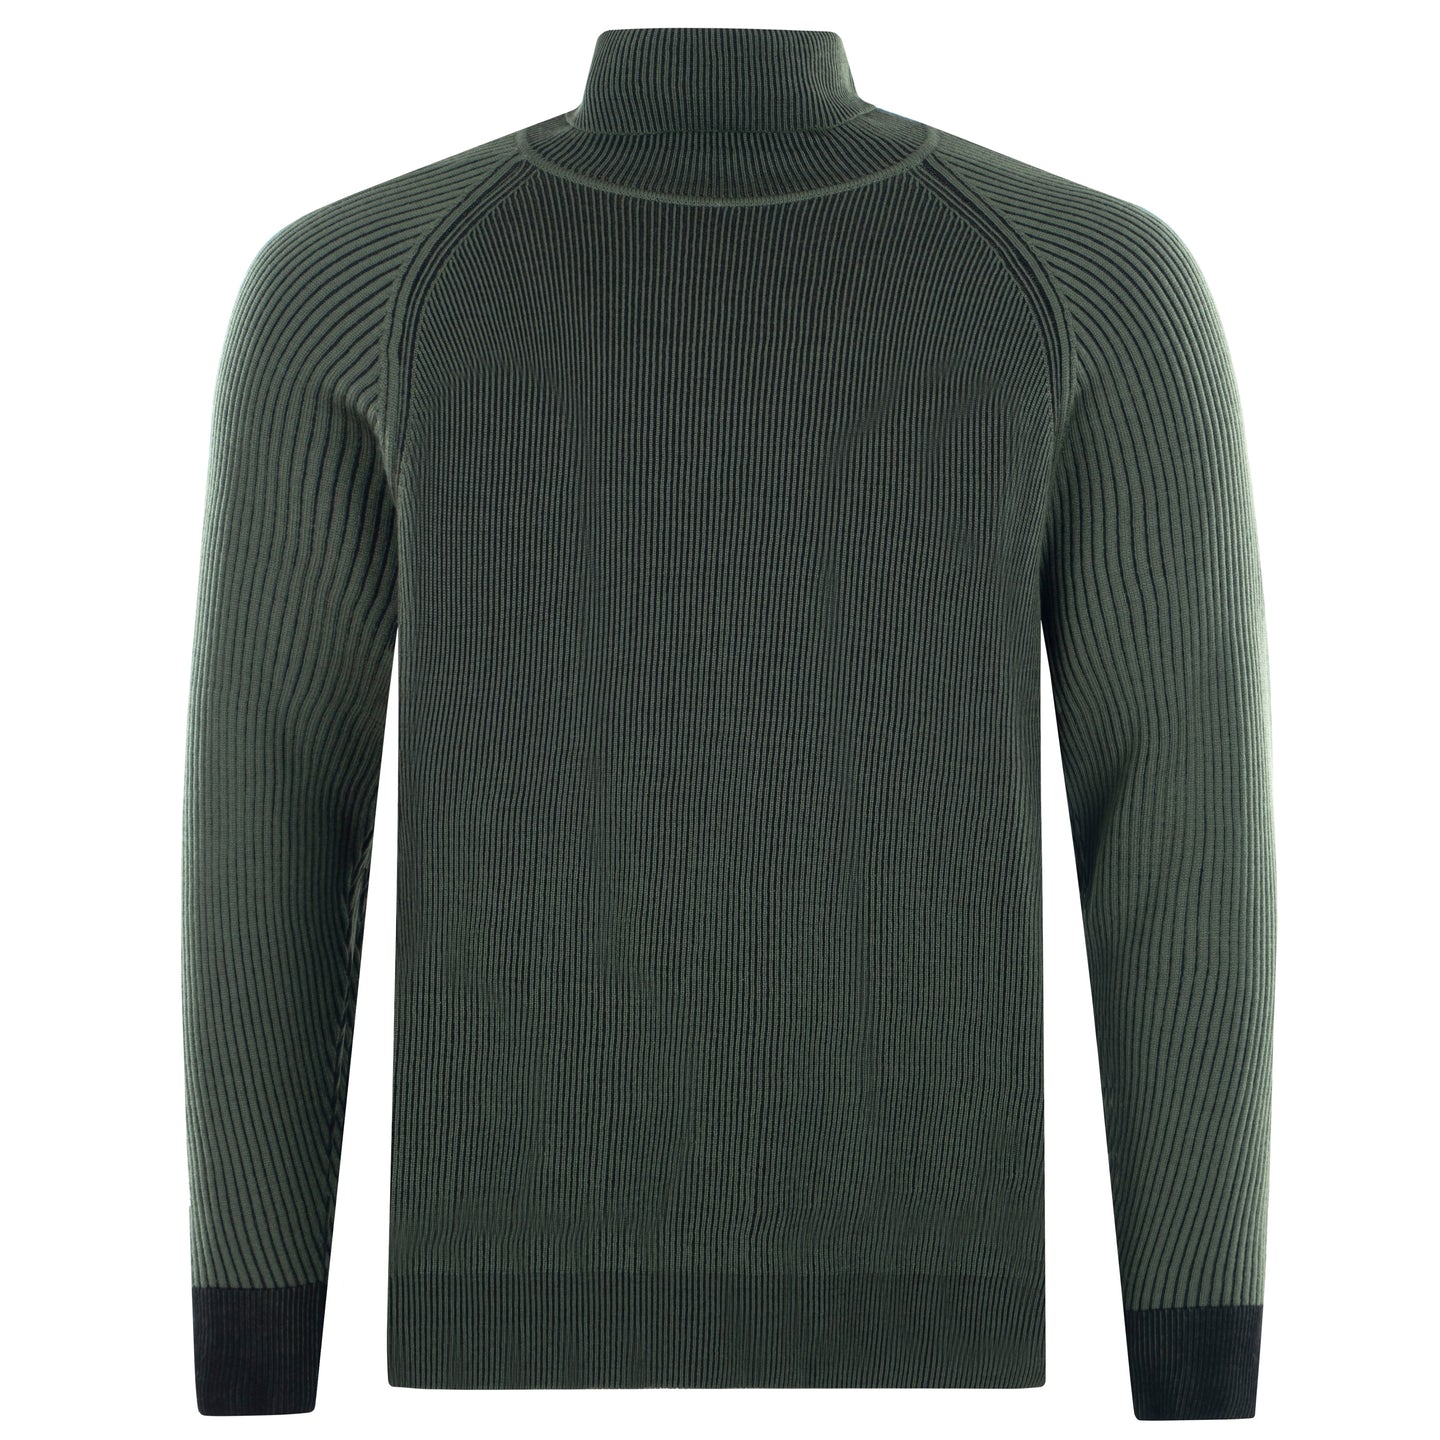 Roll-neck Pullover 2-Tone Rib ALAIN Artikelnummer: T1172-586 Farbe Oliva/Grün Vorderseite